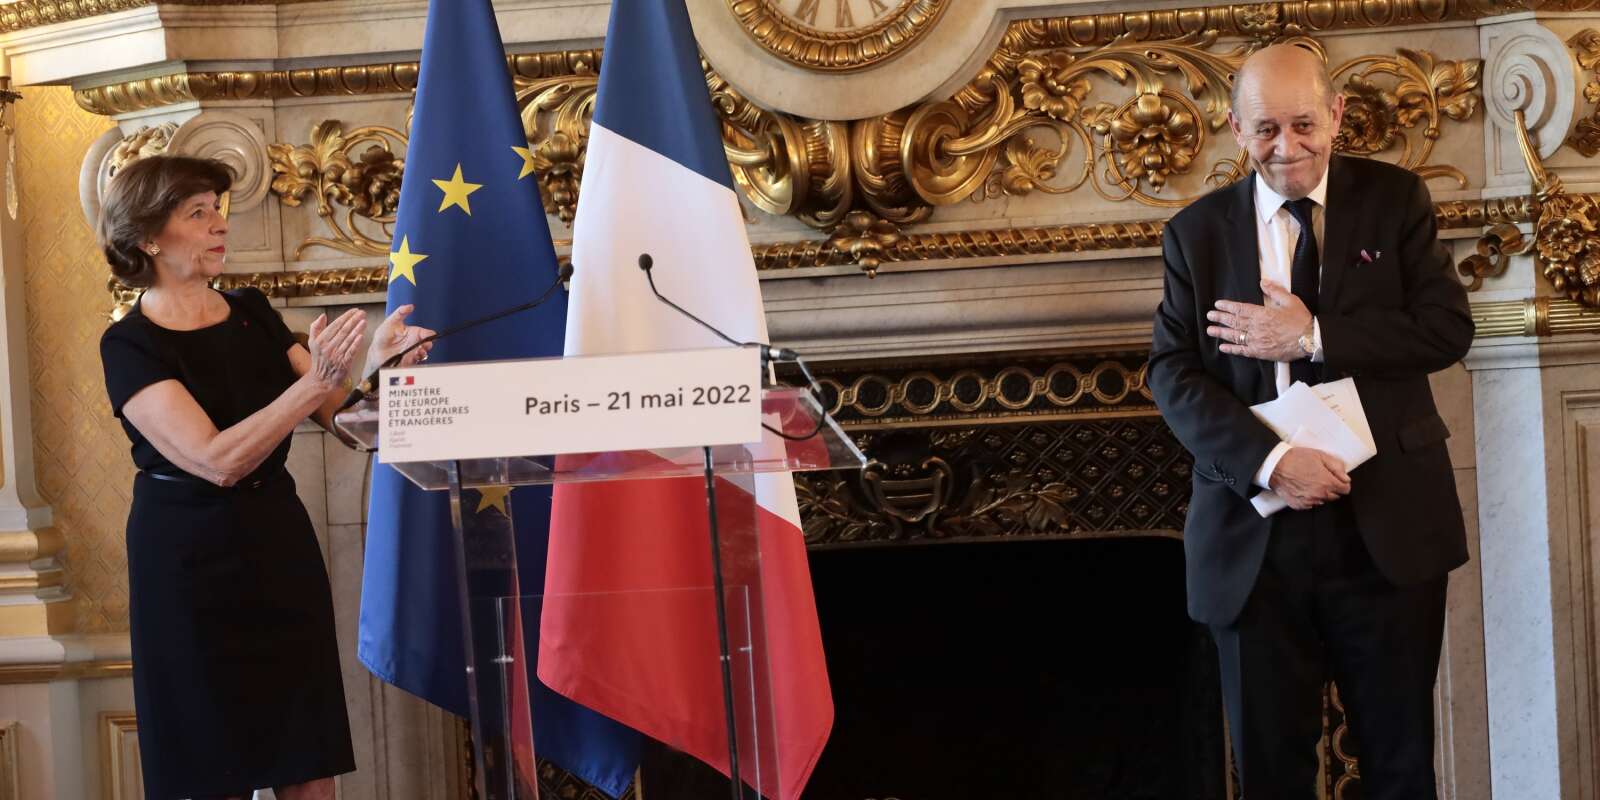 Jean-Luc Mélenchon Jean-Yves Le Drian quitte le ministère de l’Europe et des affaires étrangères, applaudi par sa successeure Catherine Colonna, lors de la passation de pouvoirs au Quai d’Orsay, le 21 mai 2022.